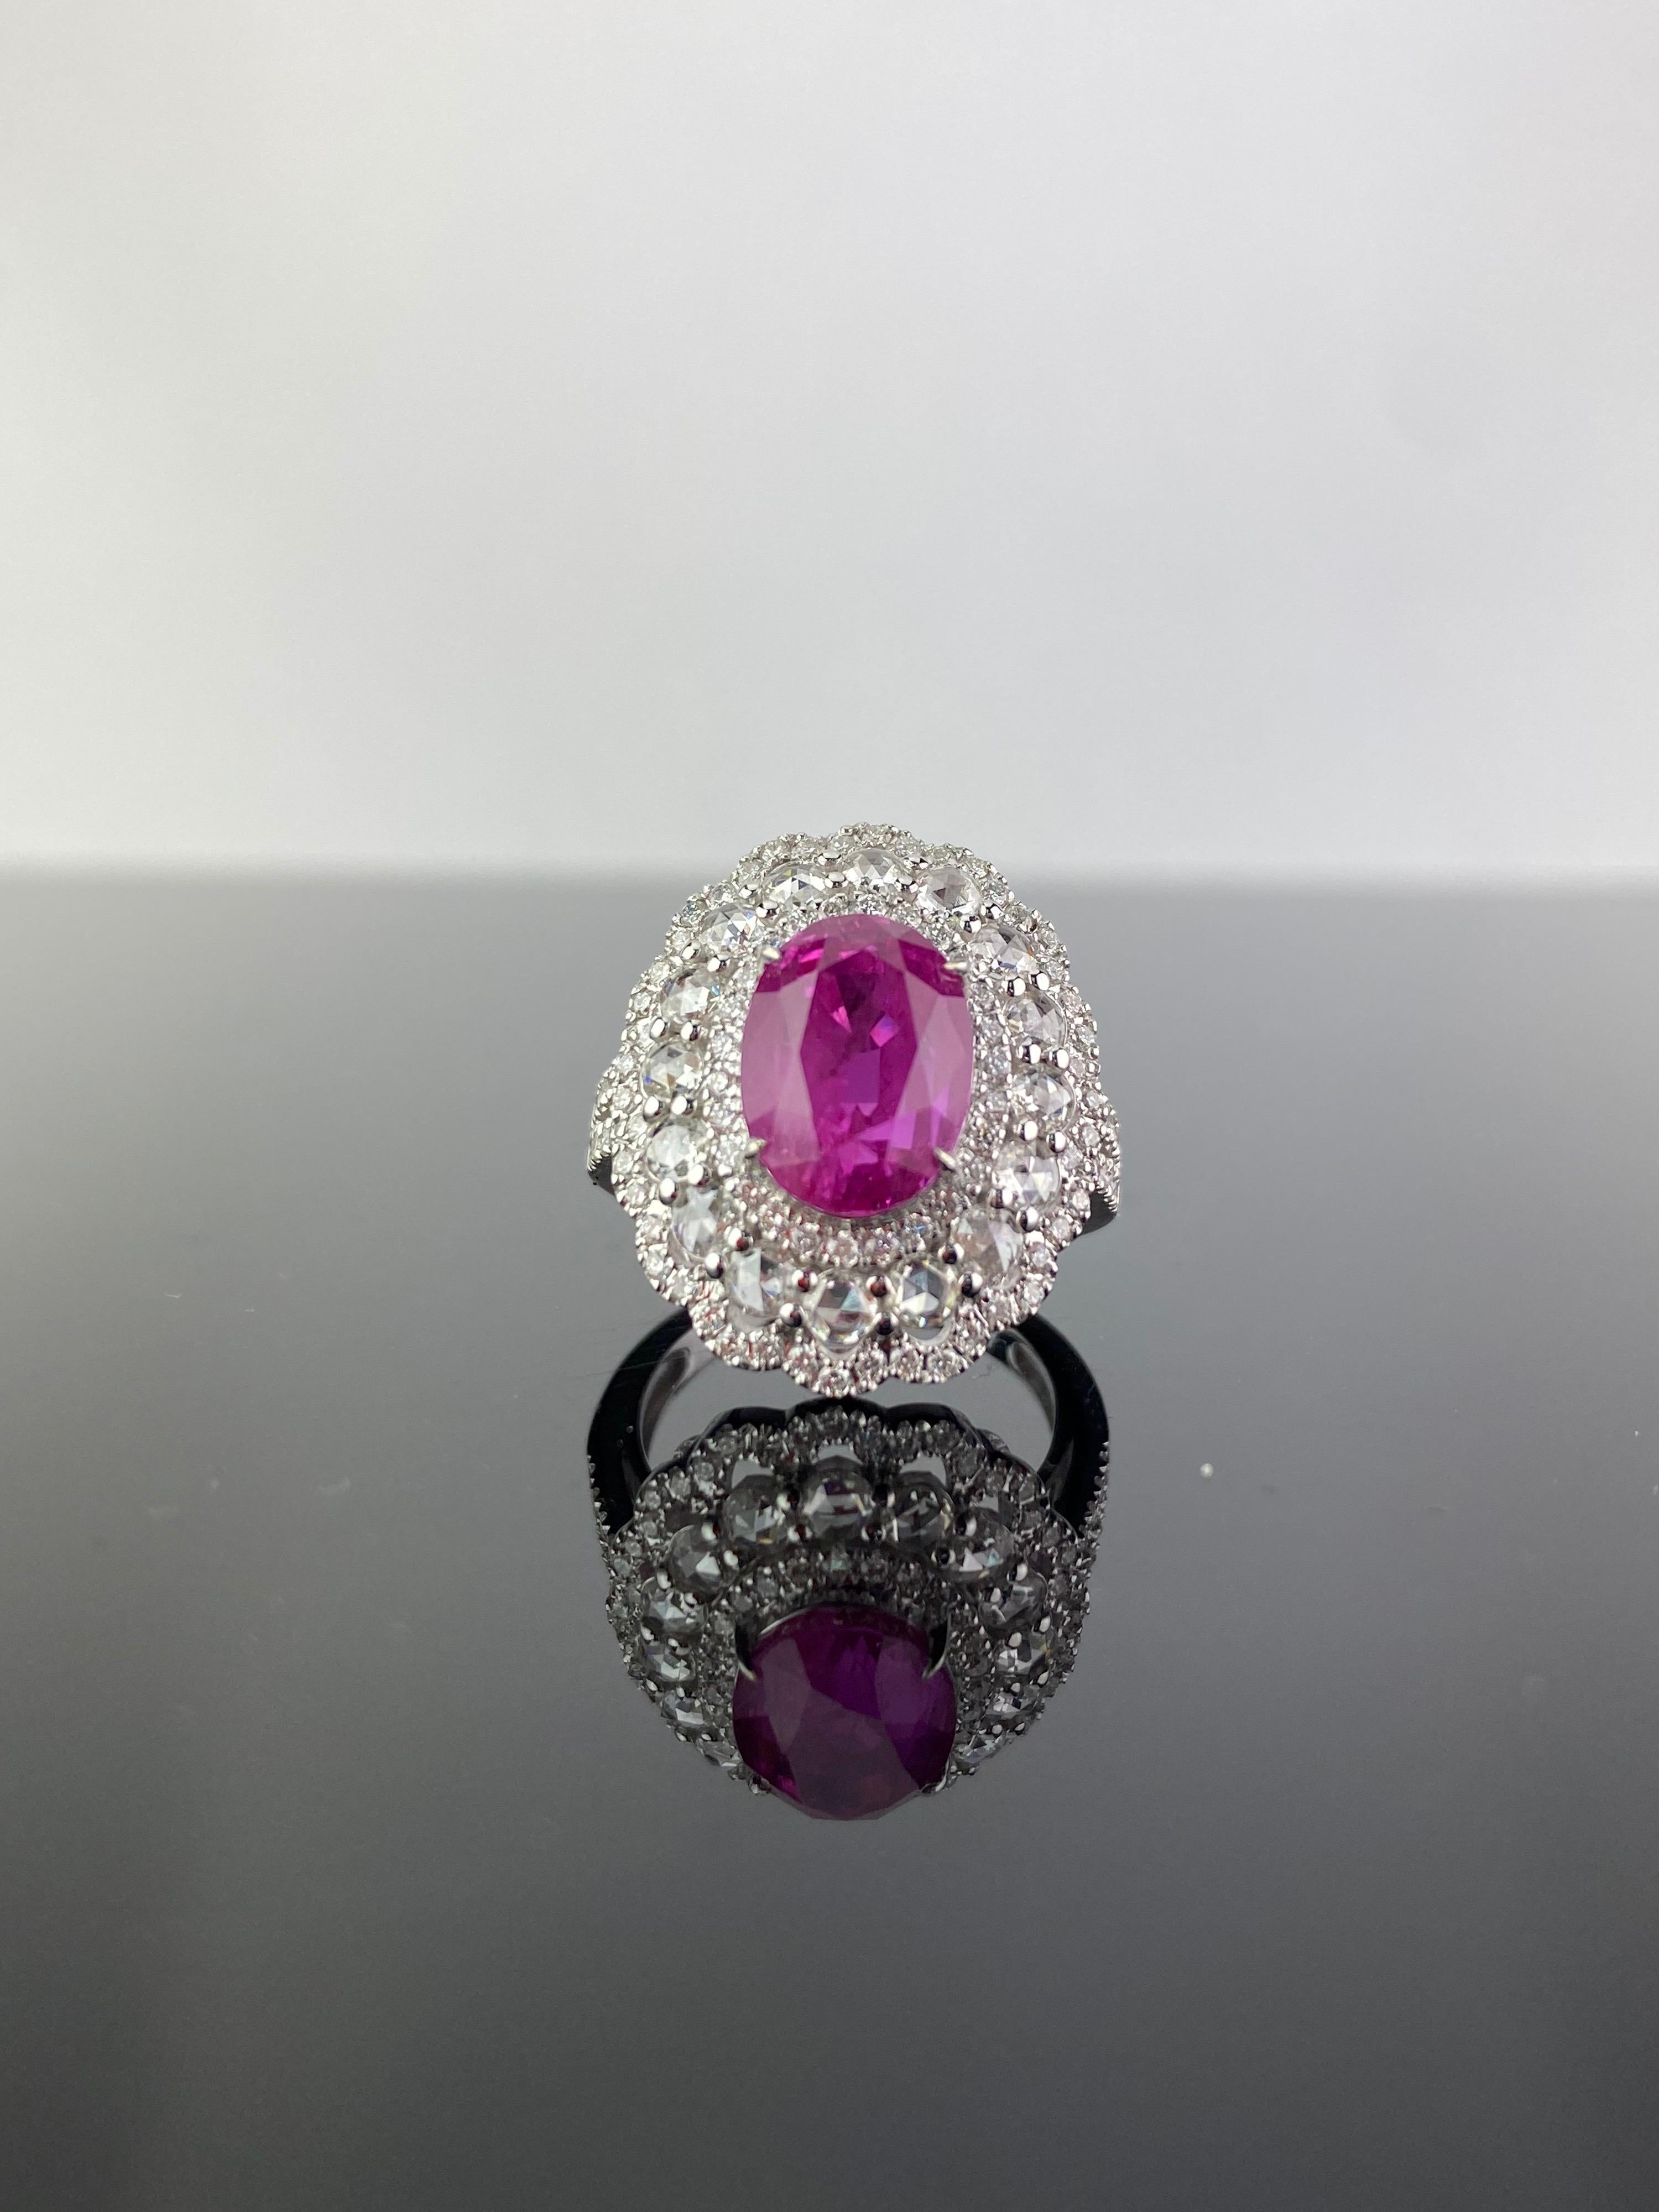 Une magnifique bague cocktail composée d'un rubis naturel de forme ovale de 6,24 carats et d'un diamant blanc de qualité VS de 1,39 carat, taillé en rose et en brillant. Les pierres précieuses sont serties dans de l'or blanc 18 carats massif, et la